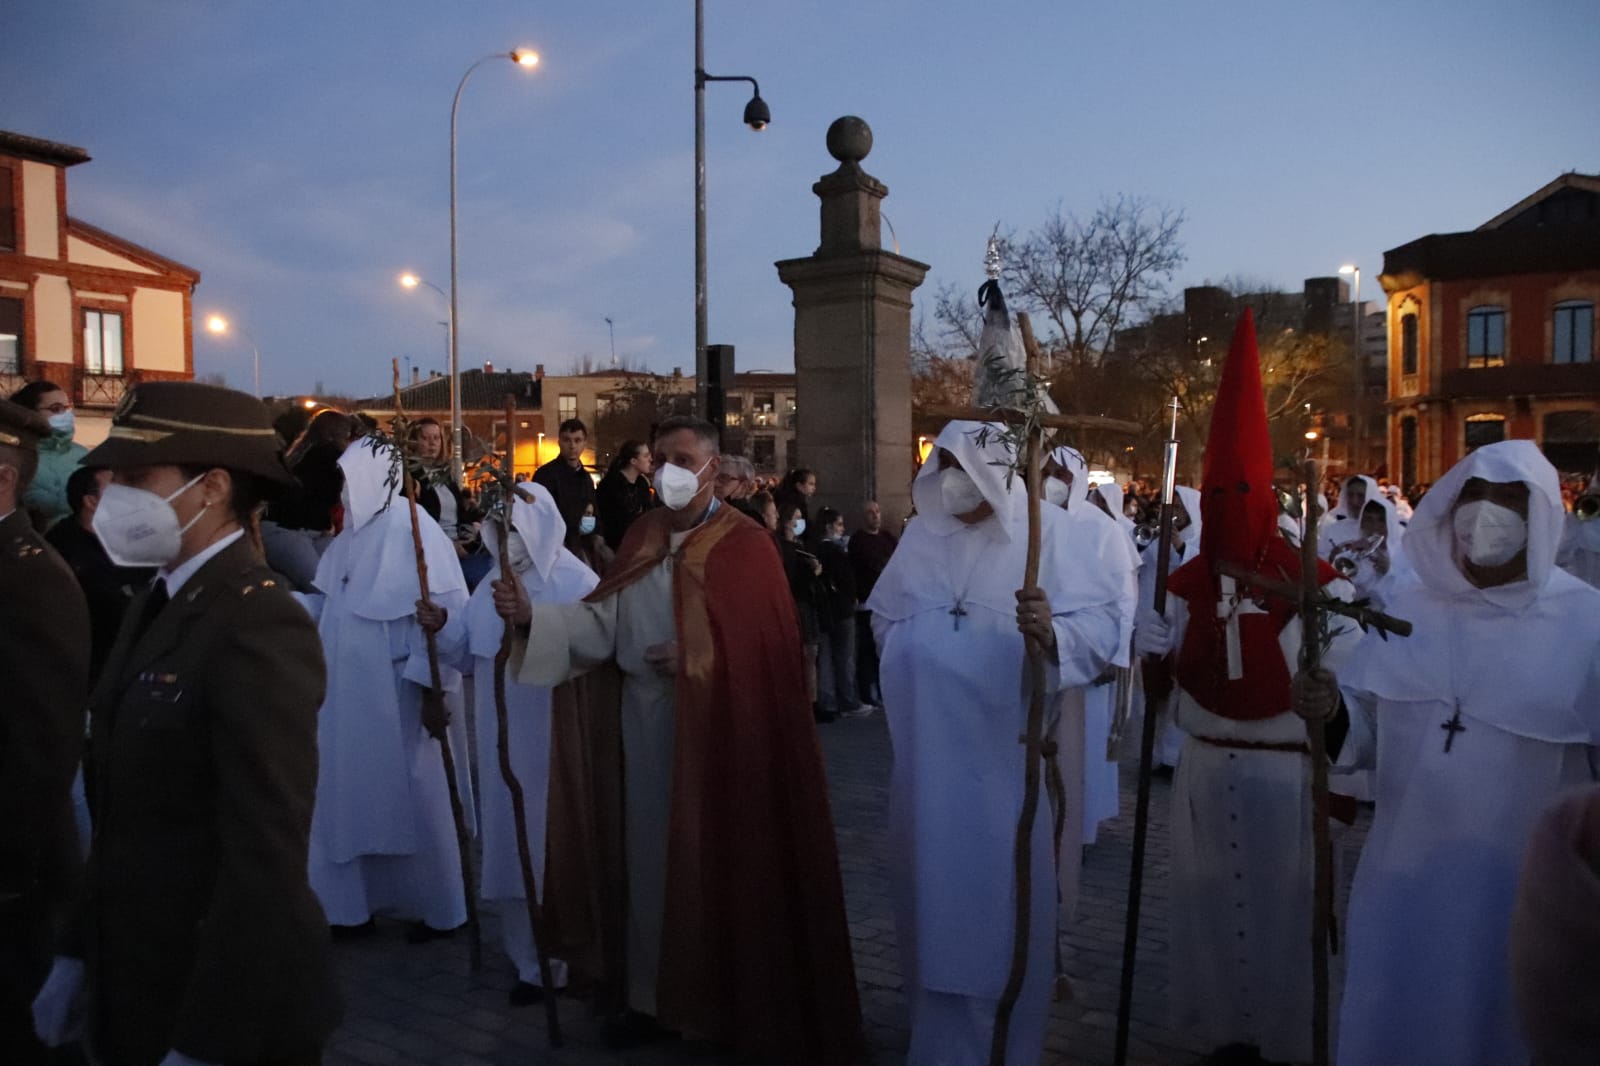  La procesión del Cristo del Amor y de la Paz ilumina a los salmantinos este Jueves Santo